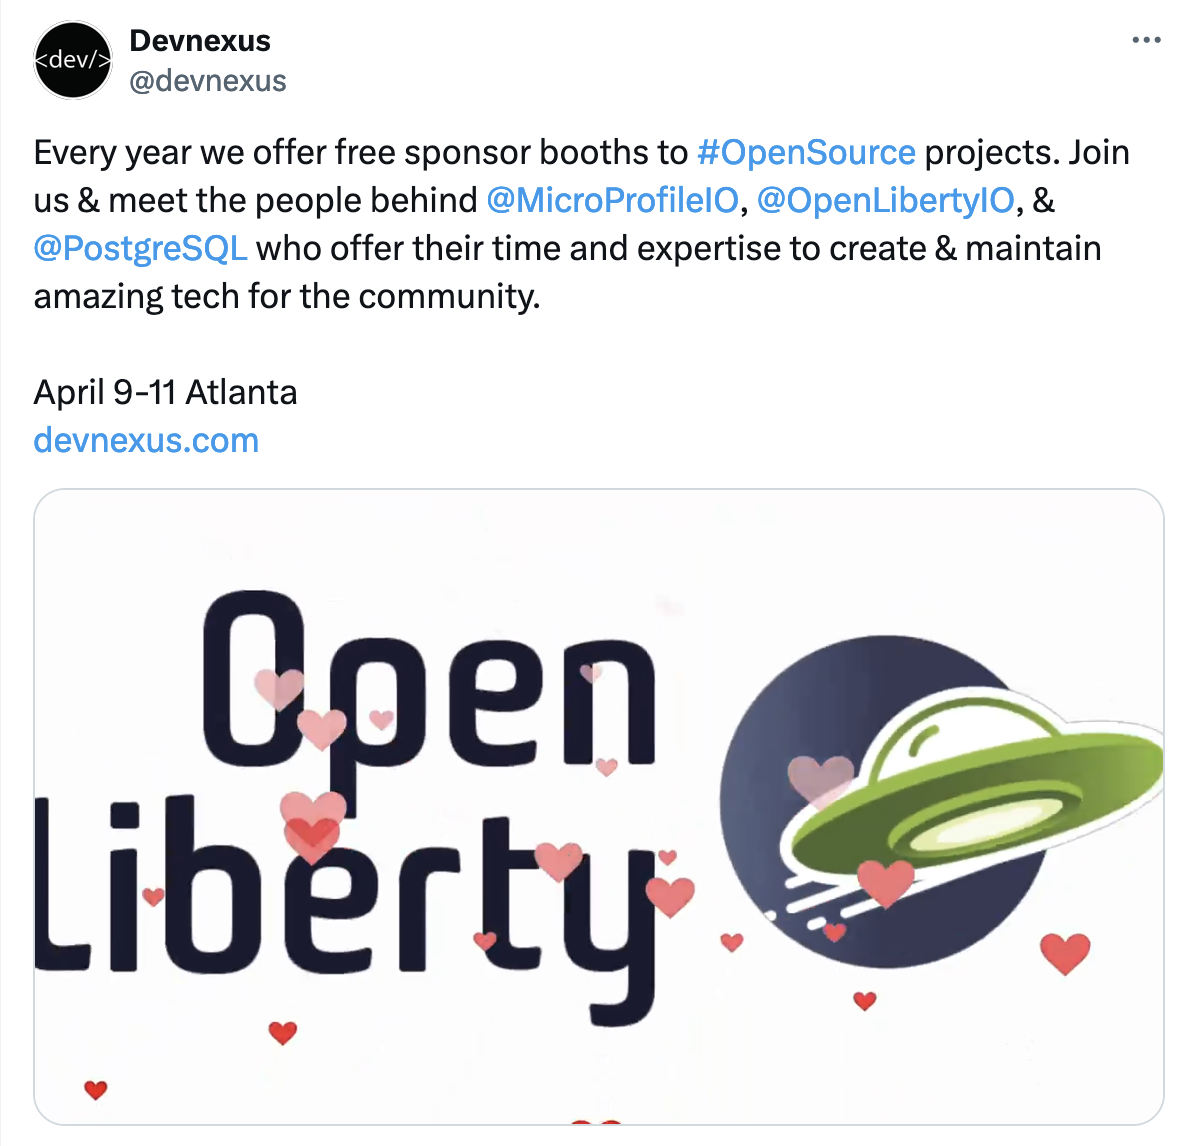 DevNexus twitter post about Open Source Sponsors